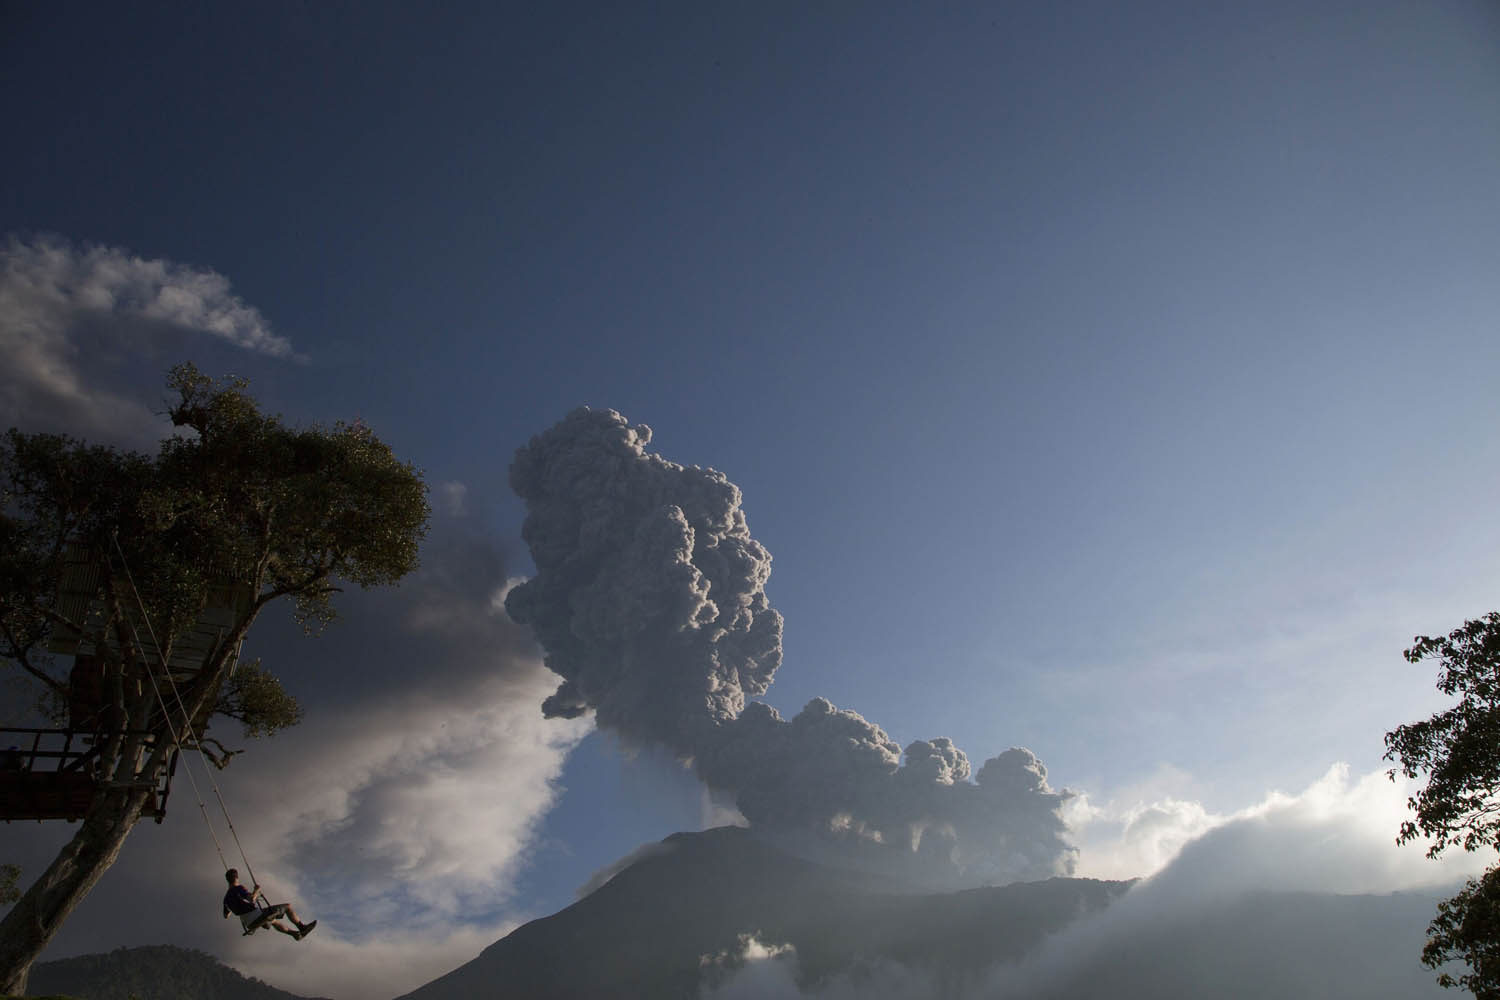 Feb. 1, 2014. A boy plays on a swing as the Tungurahua volcano erupts in Banos, Ecuador.